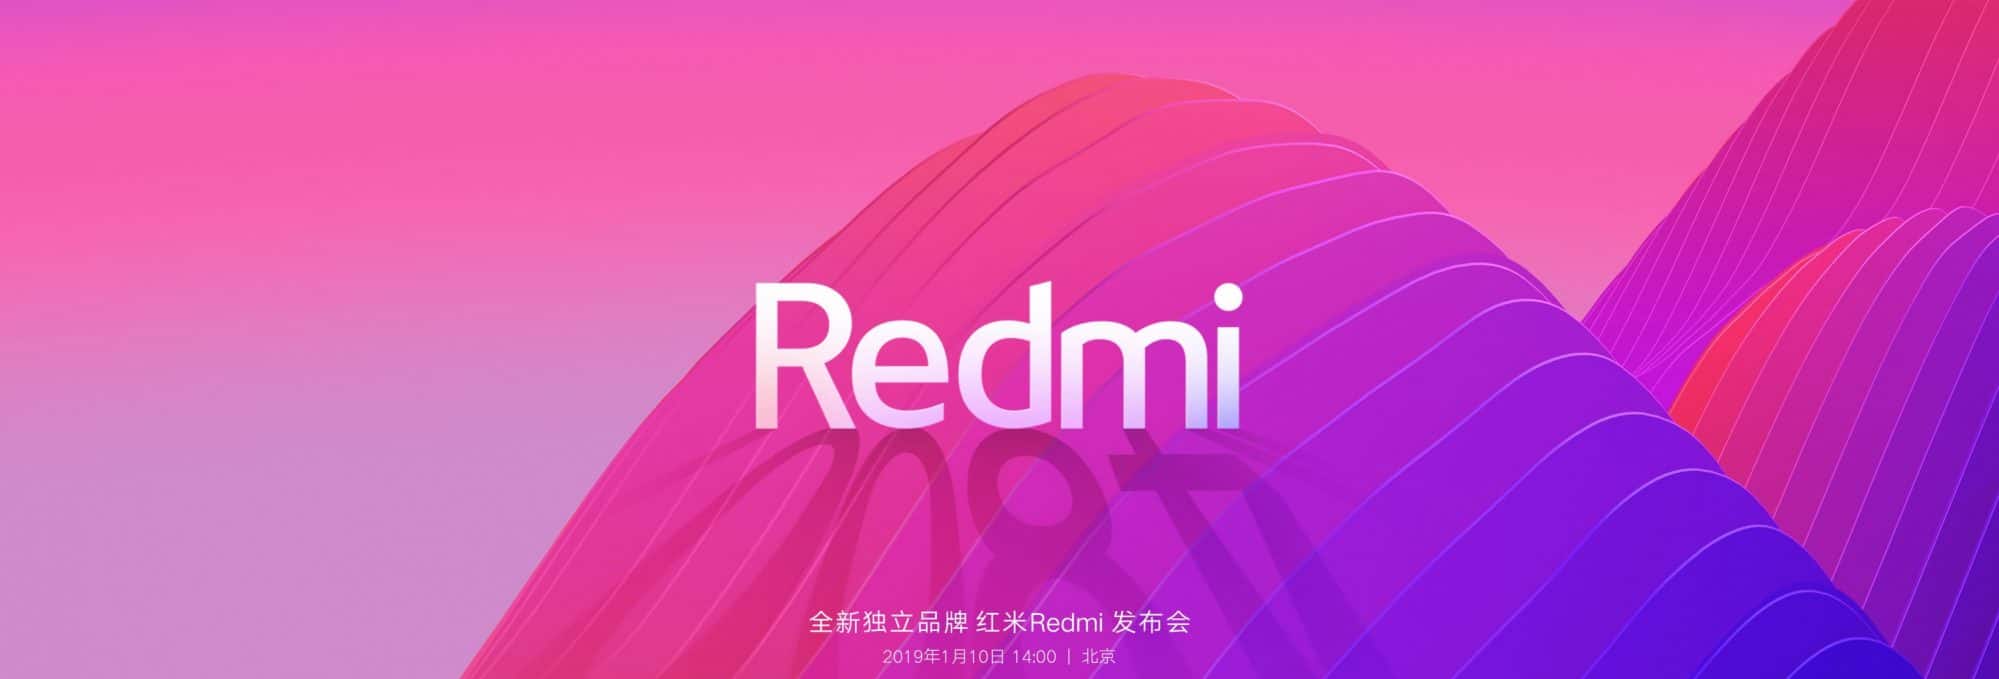 รีวิว Redmi Note 7 สมาร์ทโฟนสุดคุ้มค่า เริ่มต้นในราคาที่พอเพียง 5